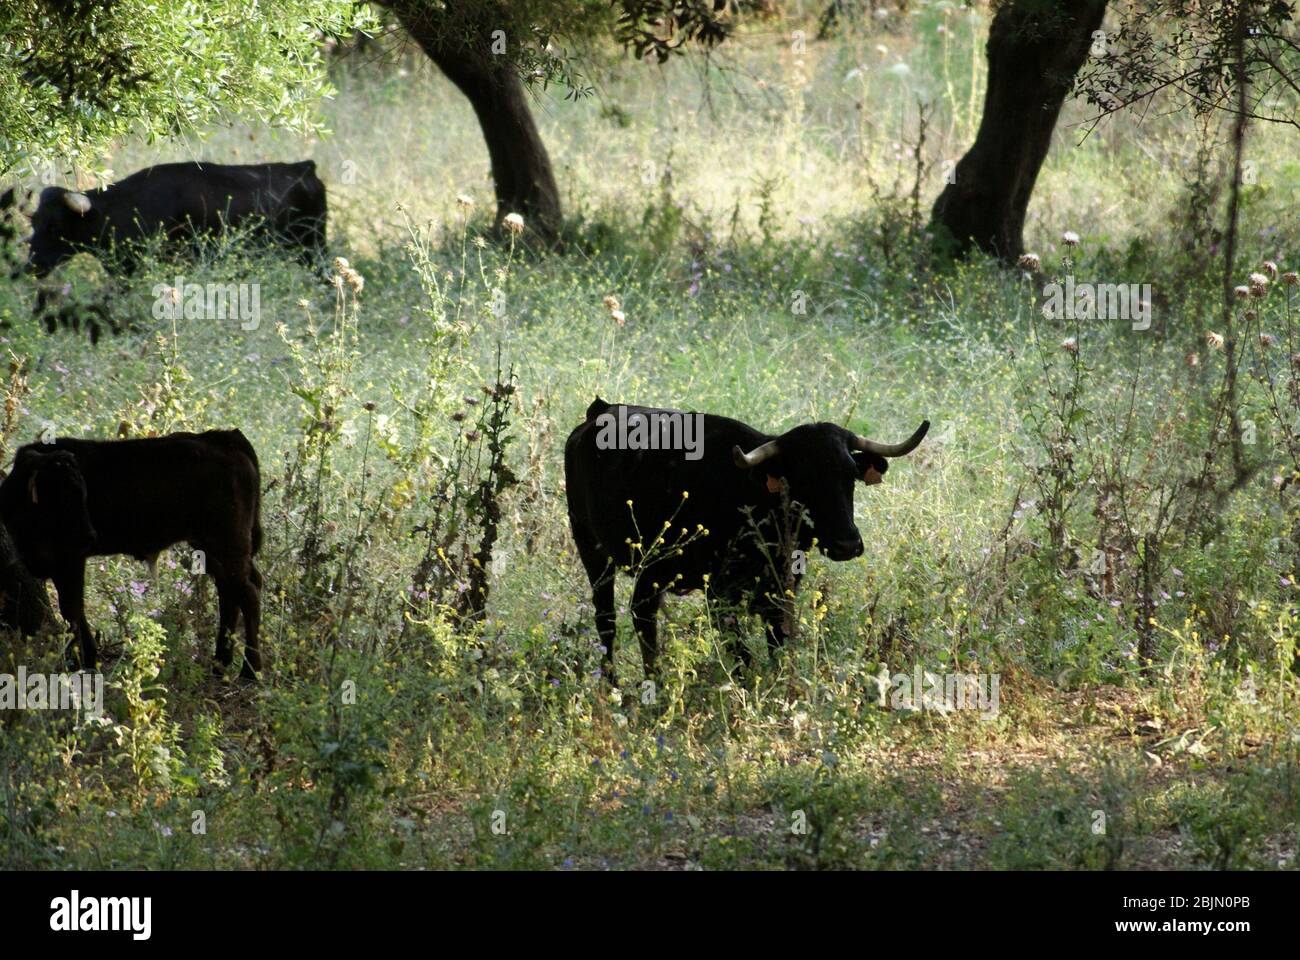 Les vaches noires espagnoles se battent librement sur le terrain en Espagne Banque D'Images